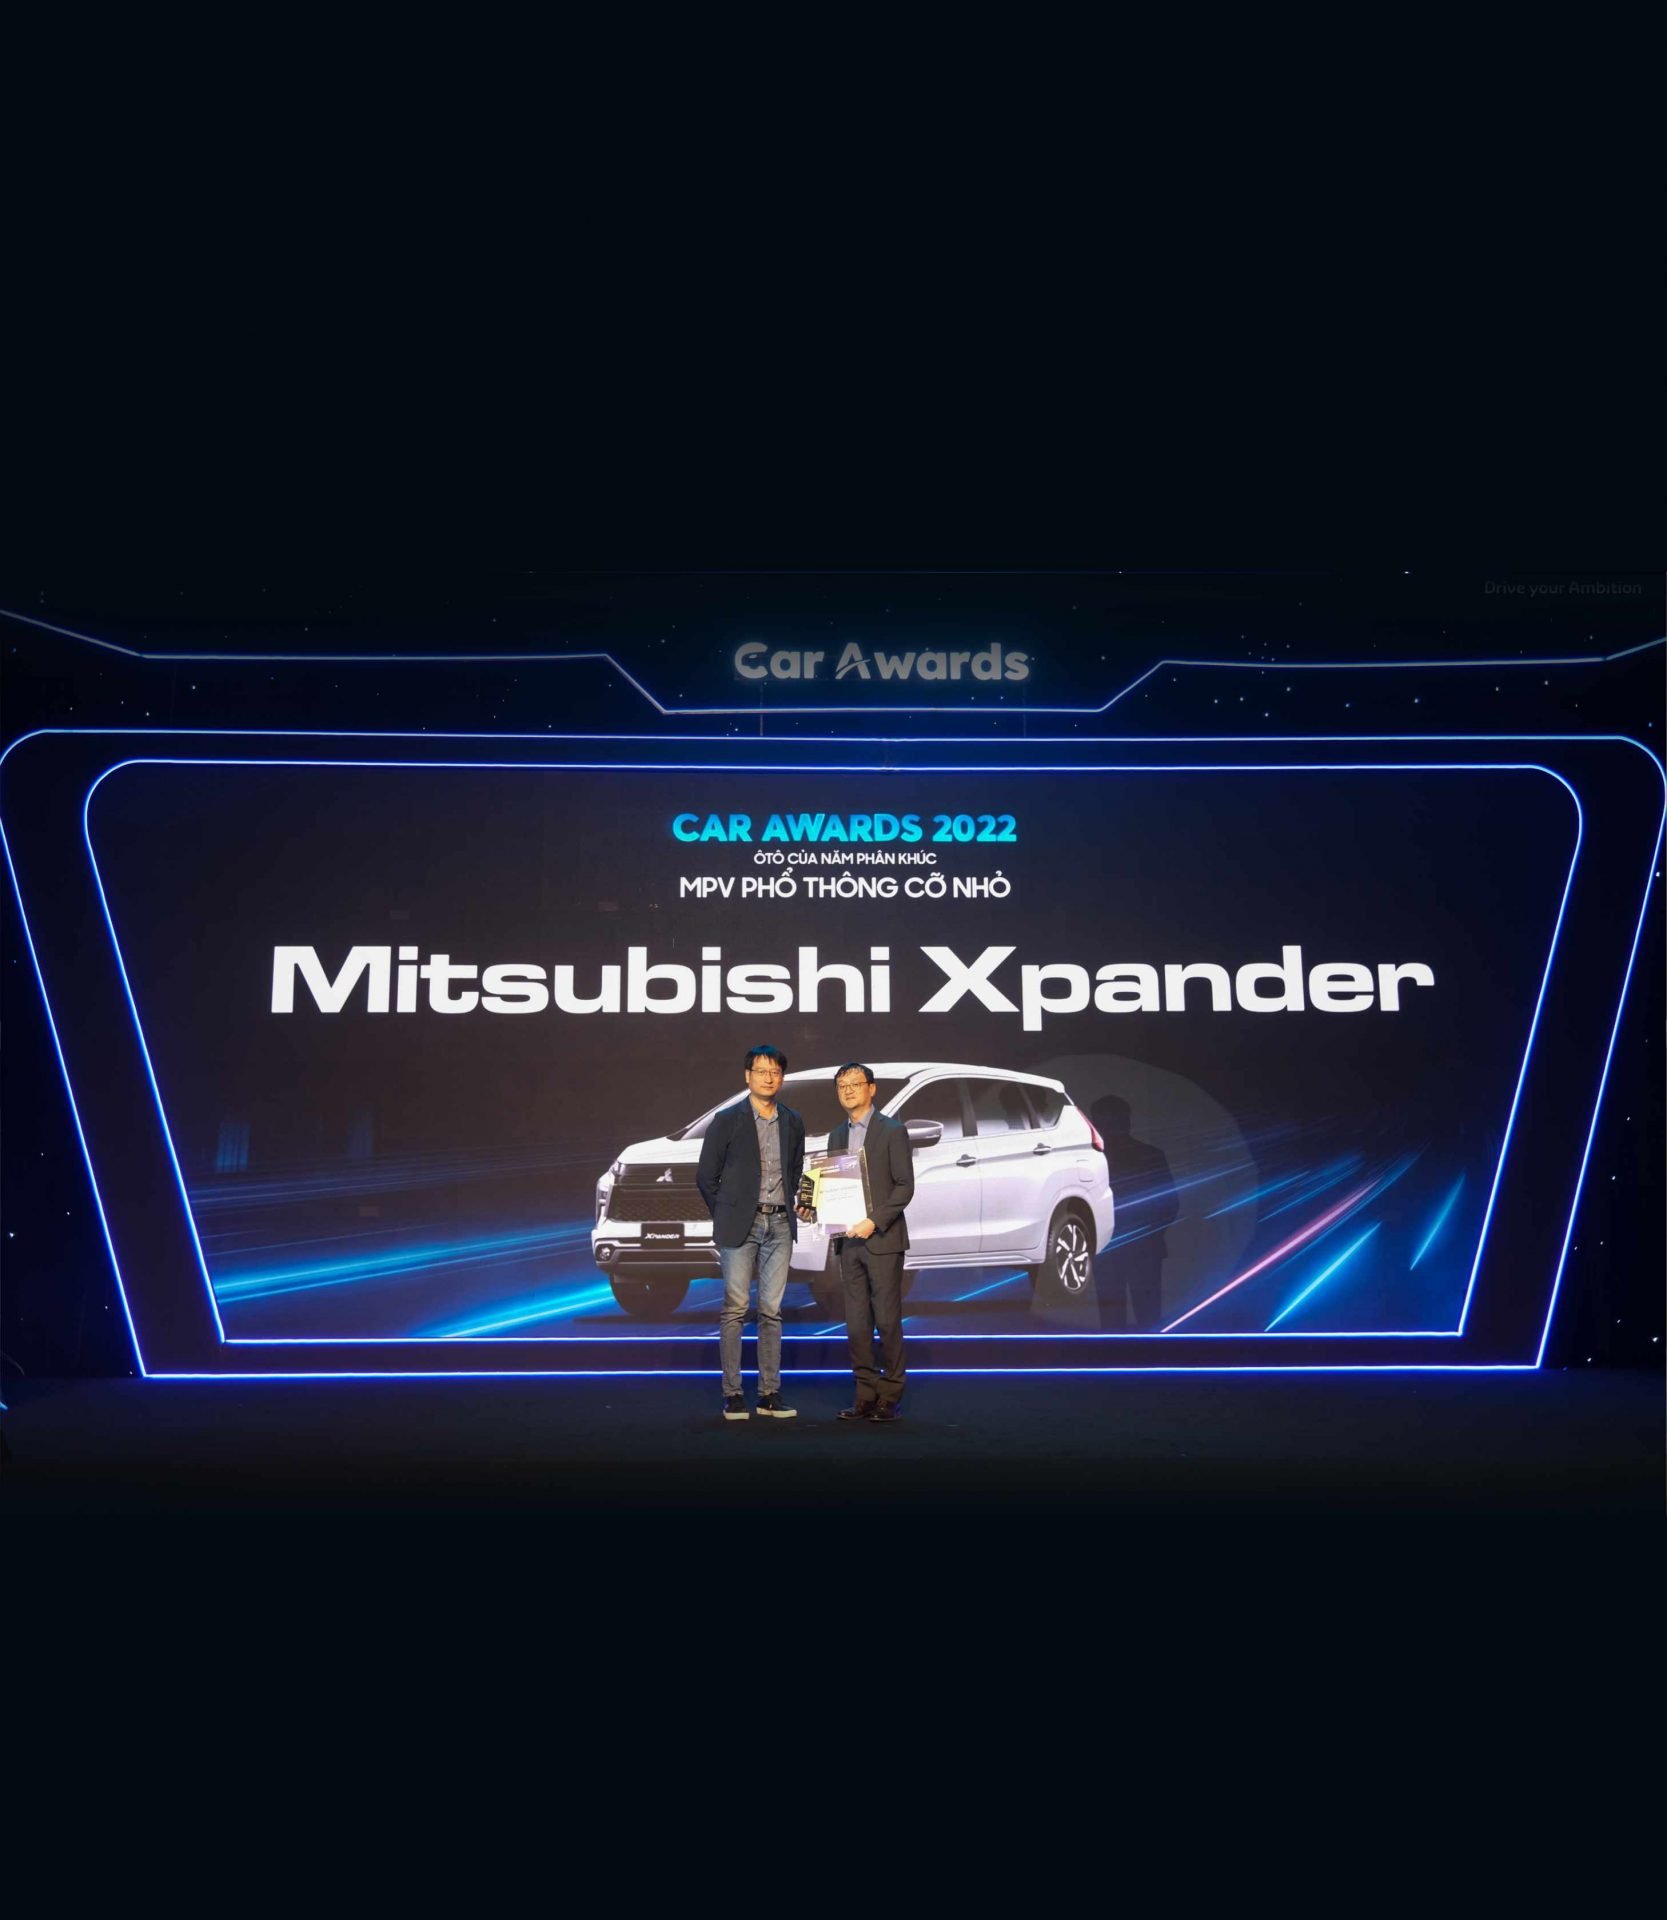 MITSUBISHI XPANDER AWARDED “MPV OF THE YEAR” FOR TWO CONSECUTIVE YEARS AT CAR AWARDS